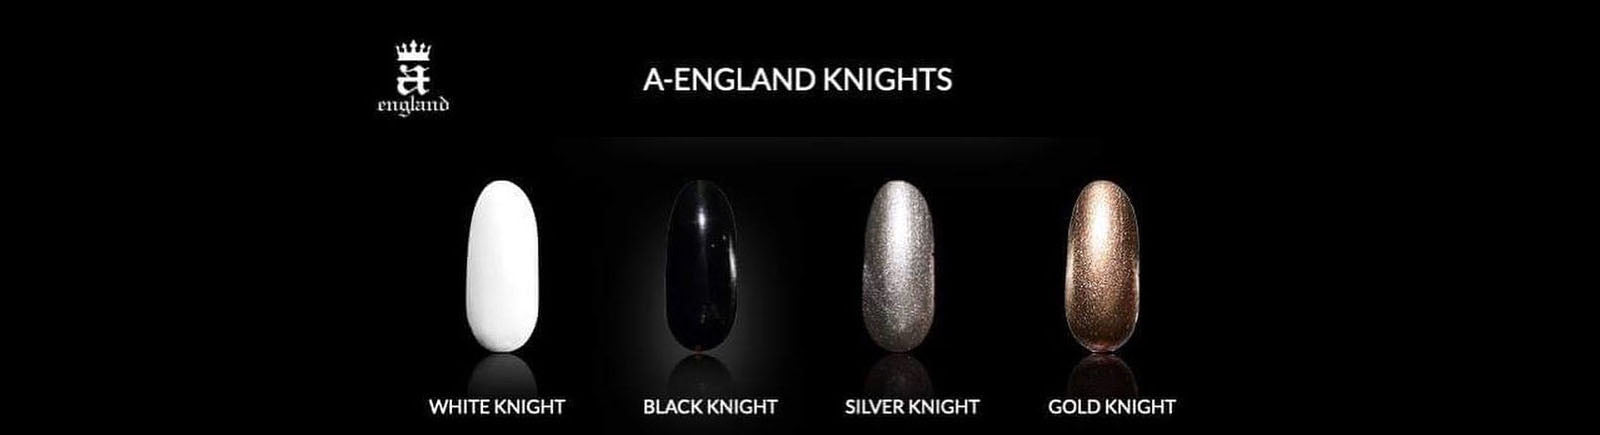 a-england- A-England Knights